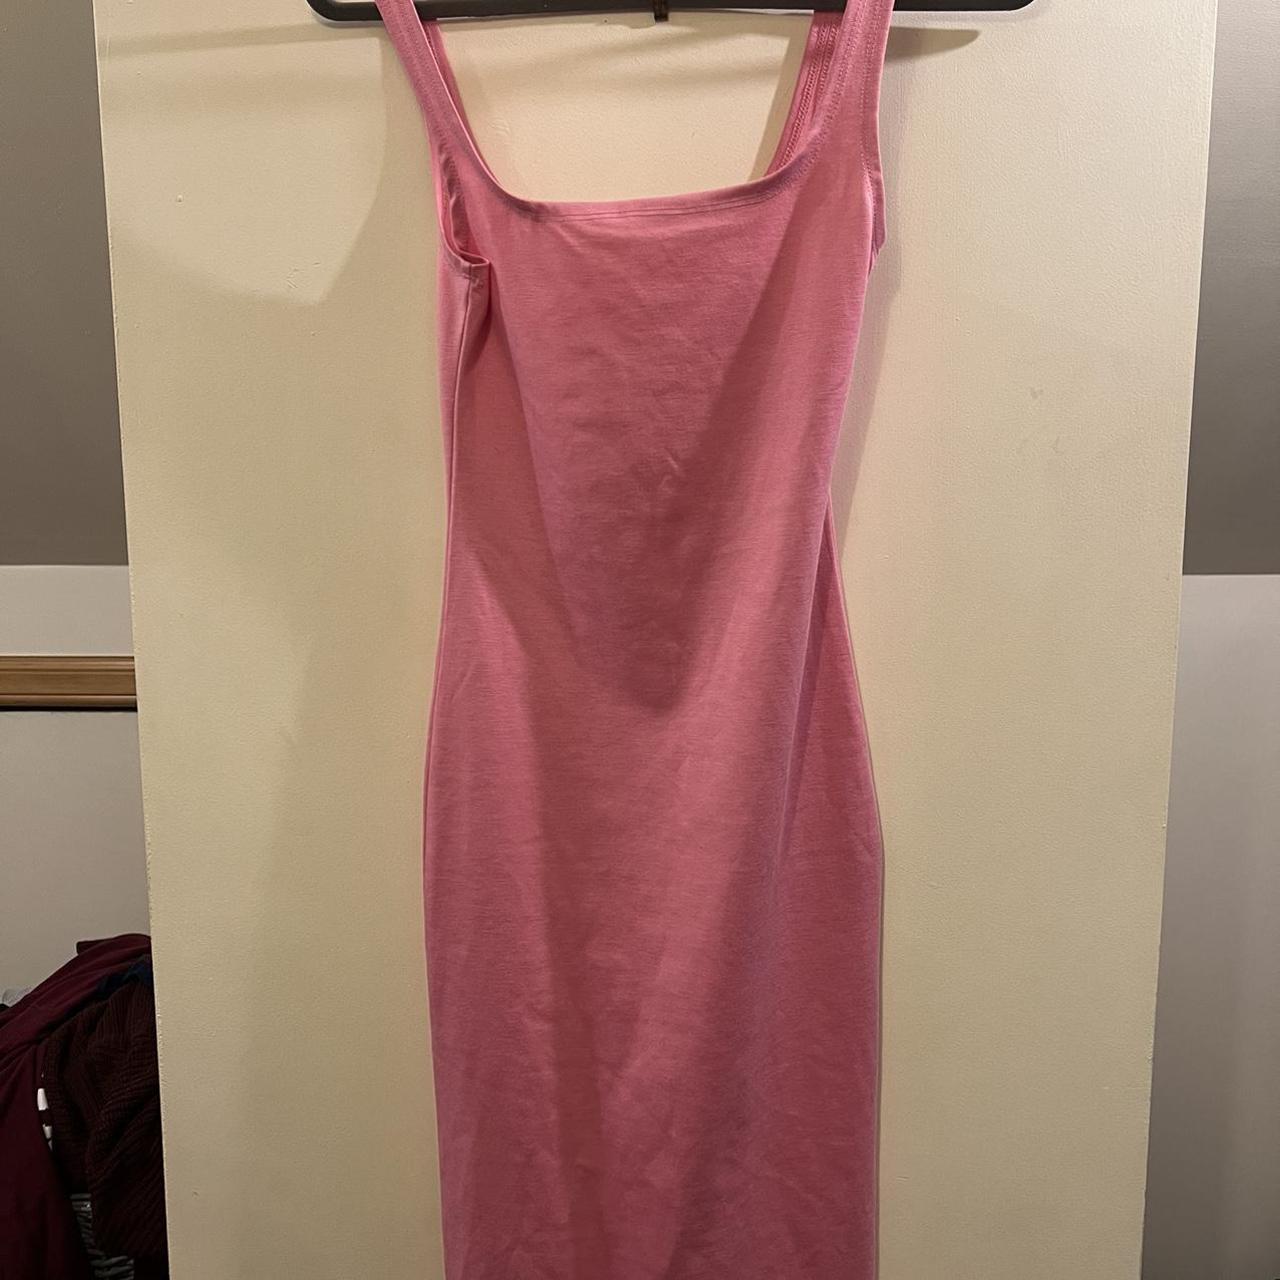 Primark Women's Pink Dress | Depop